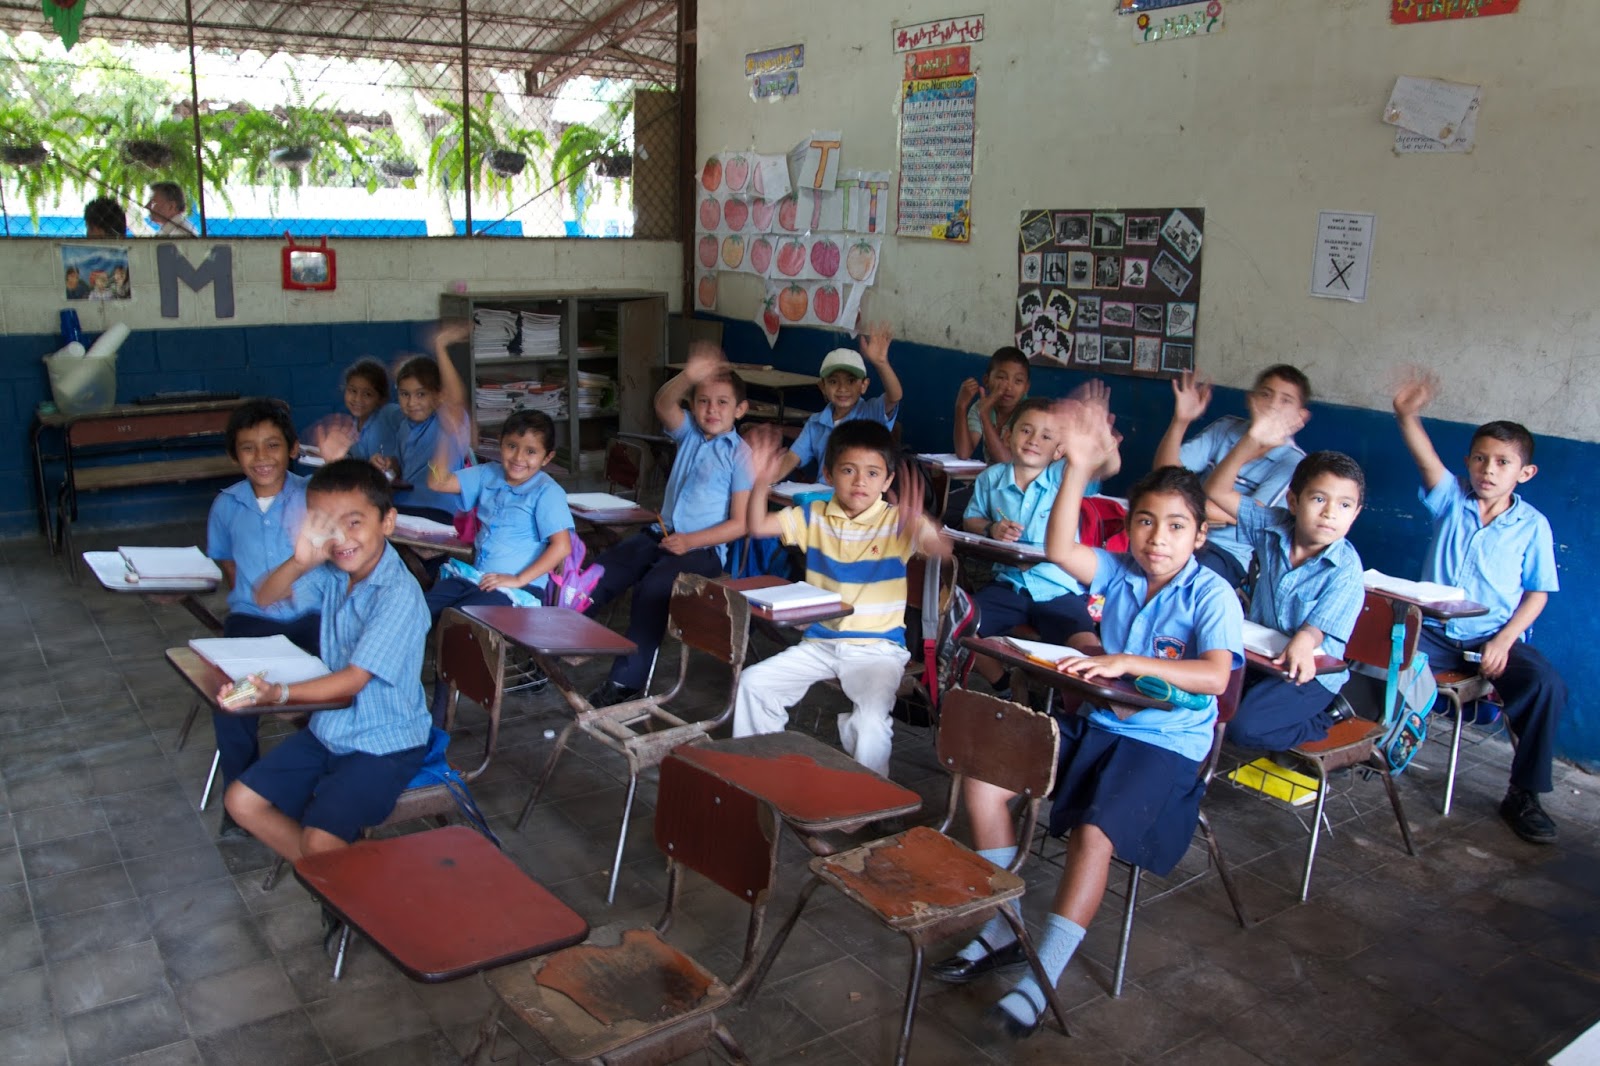 A school in El Salvador